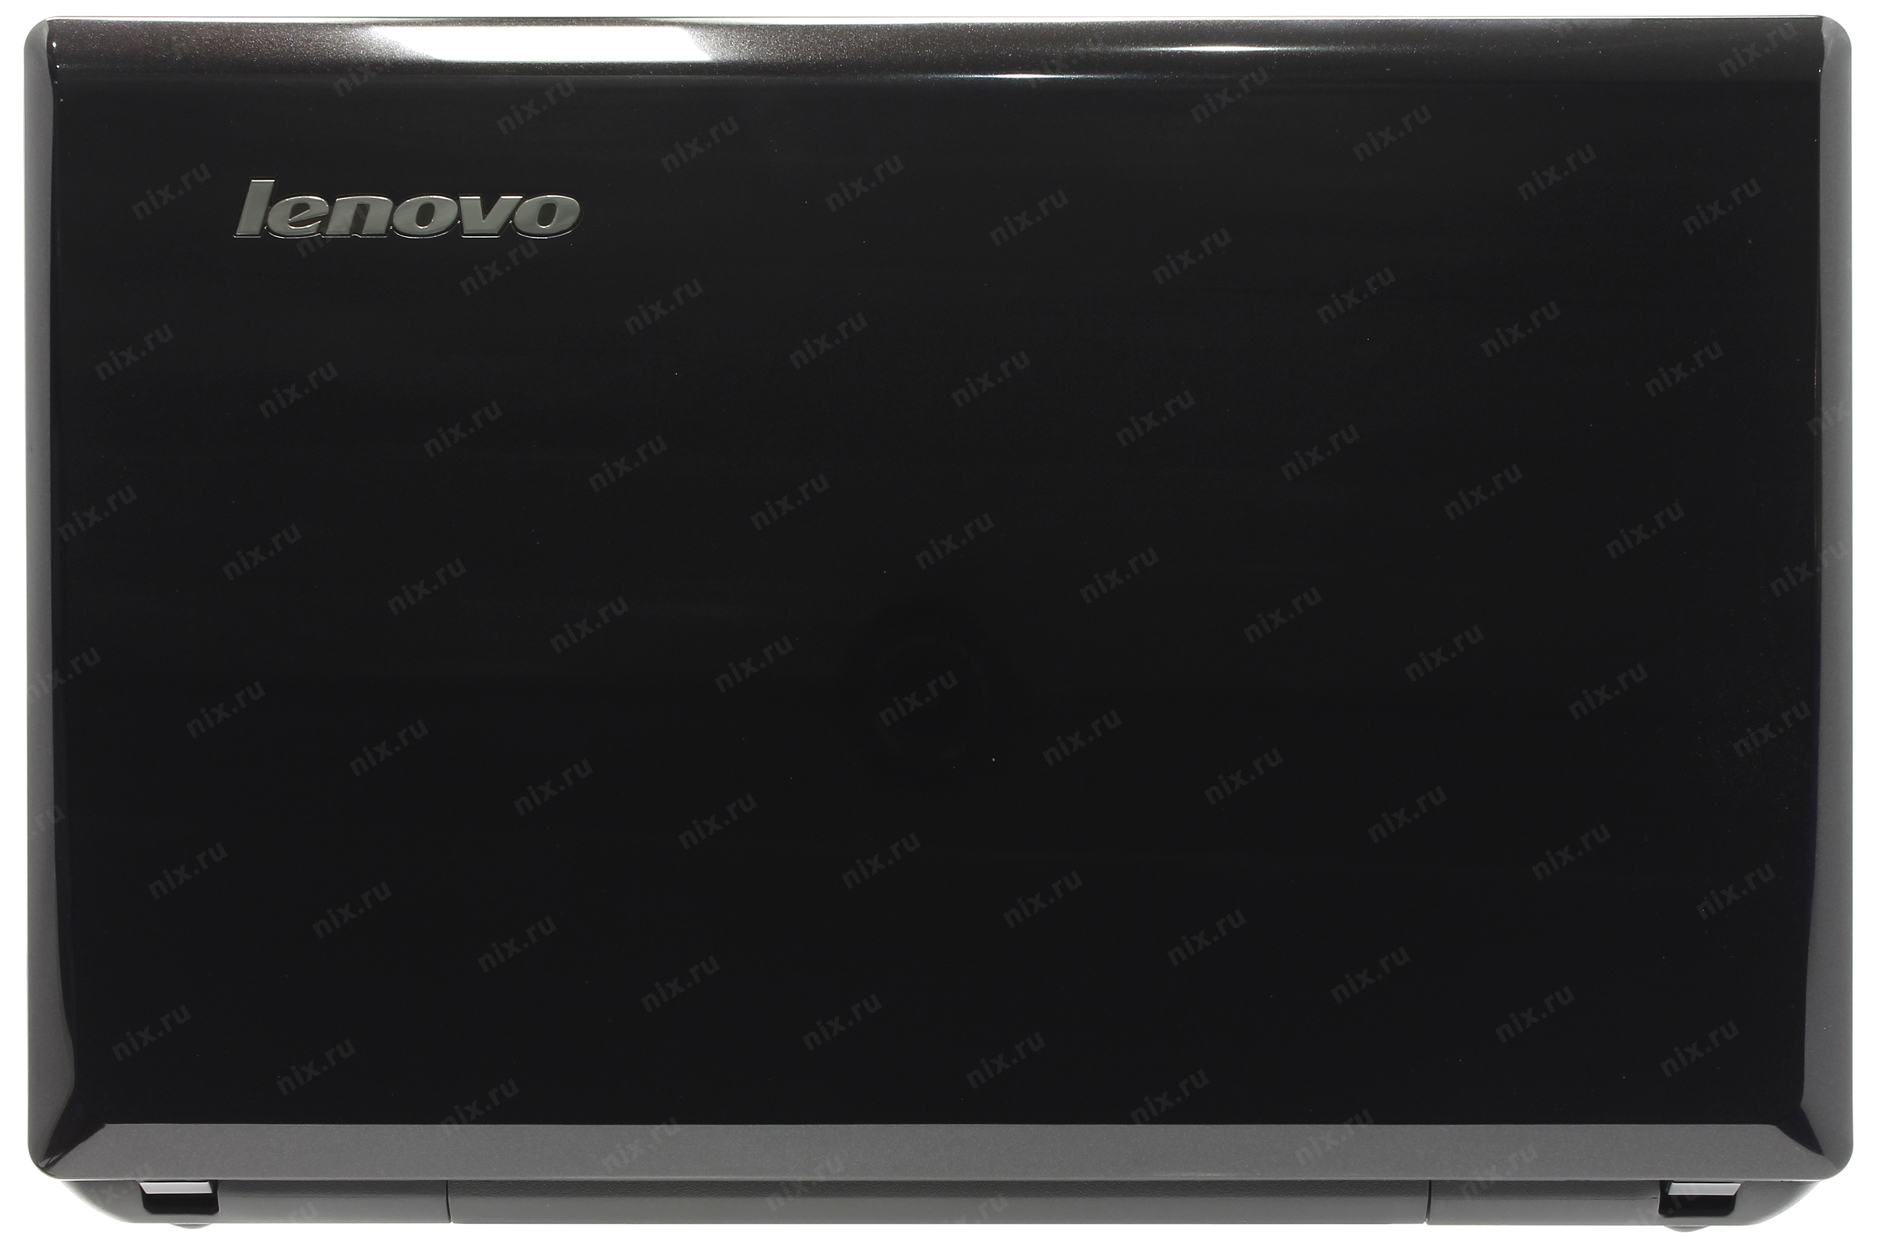 Купить Ноутбук Lenovo G580 20227